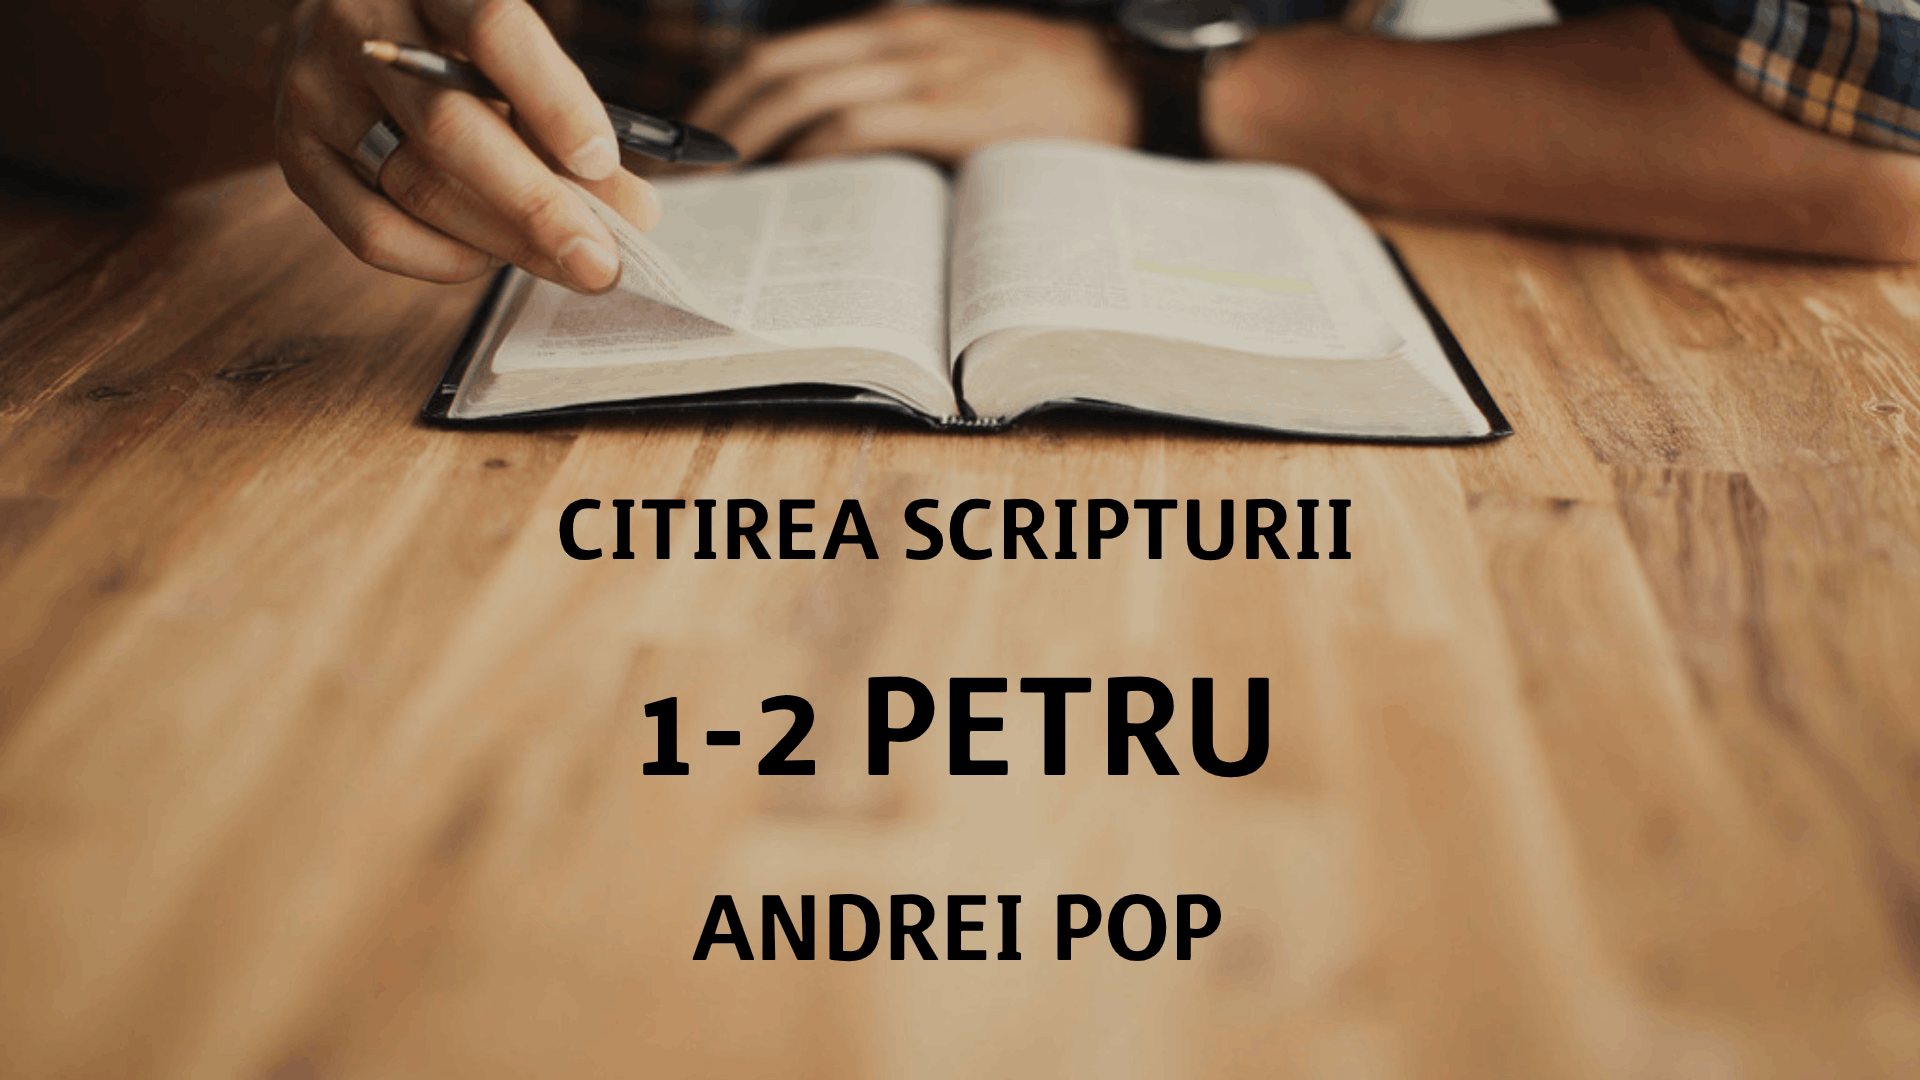 Citirea Scripturii - 1-2 Petru - Andrei Pop